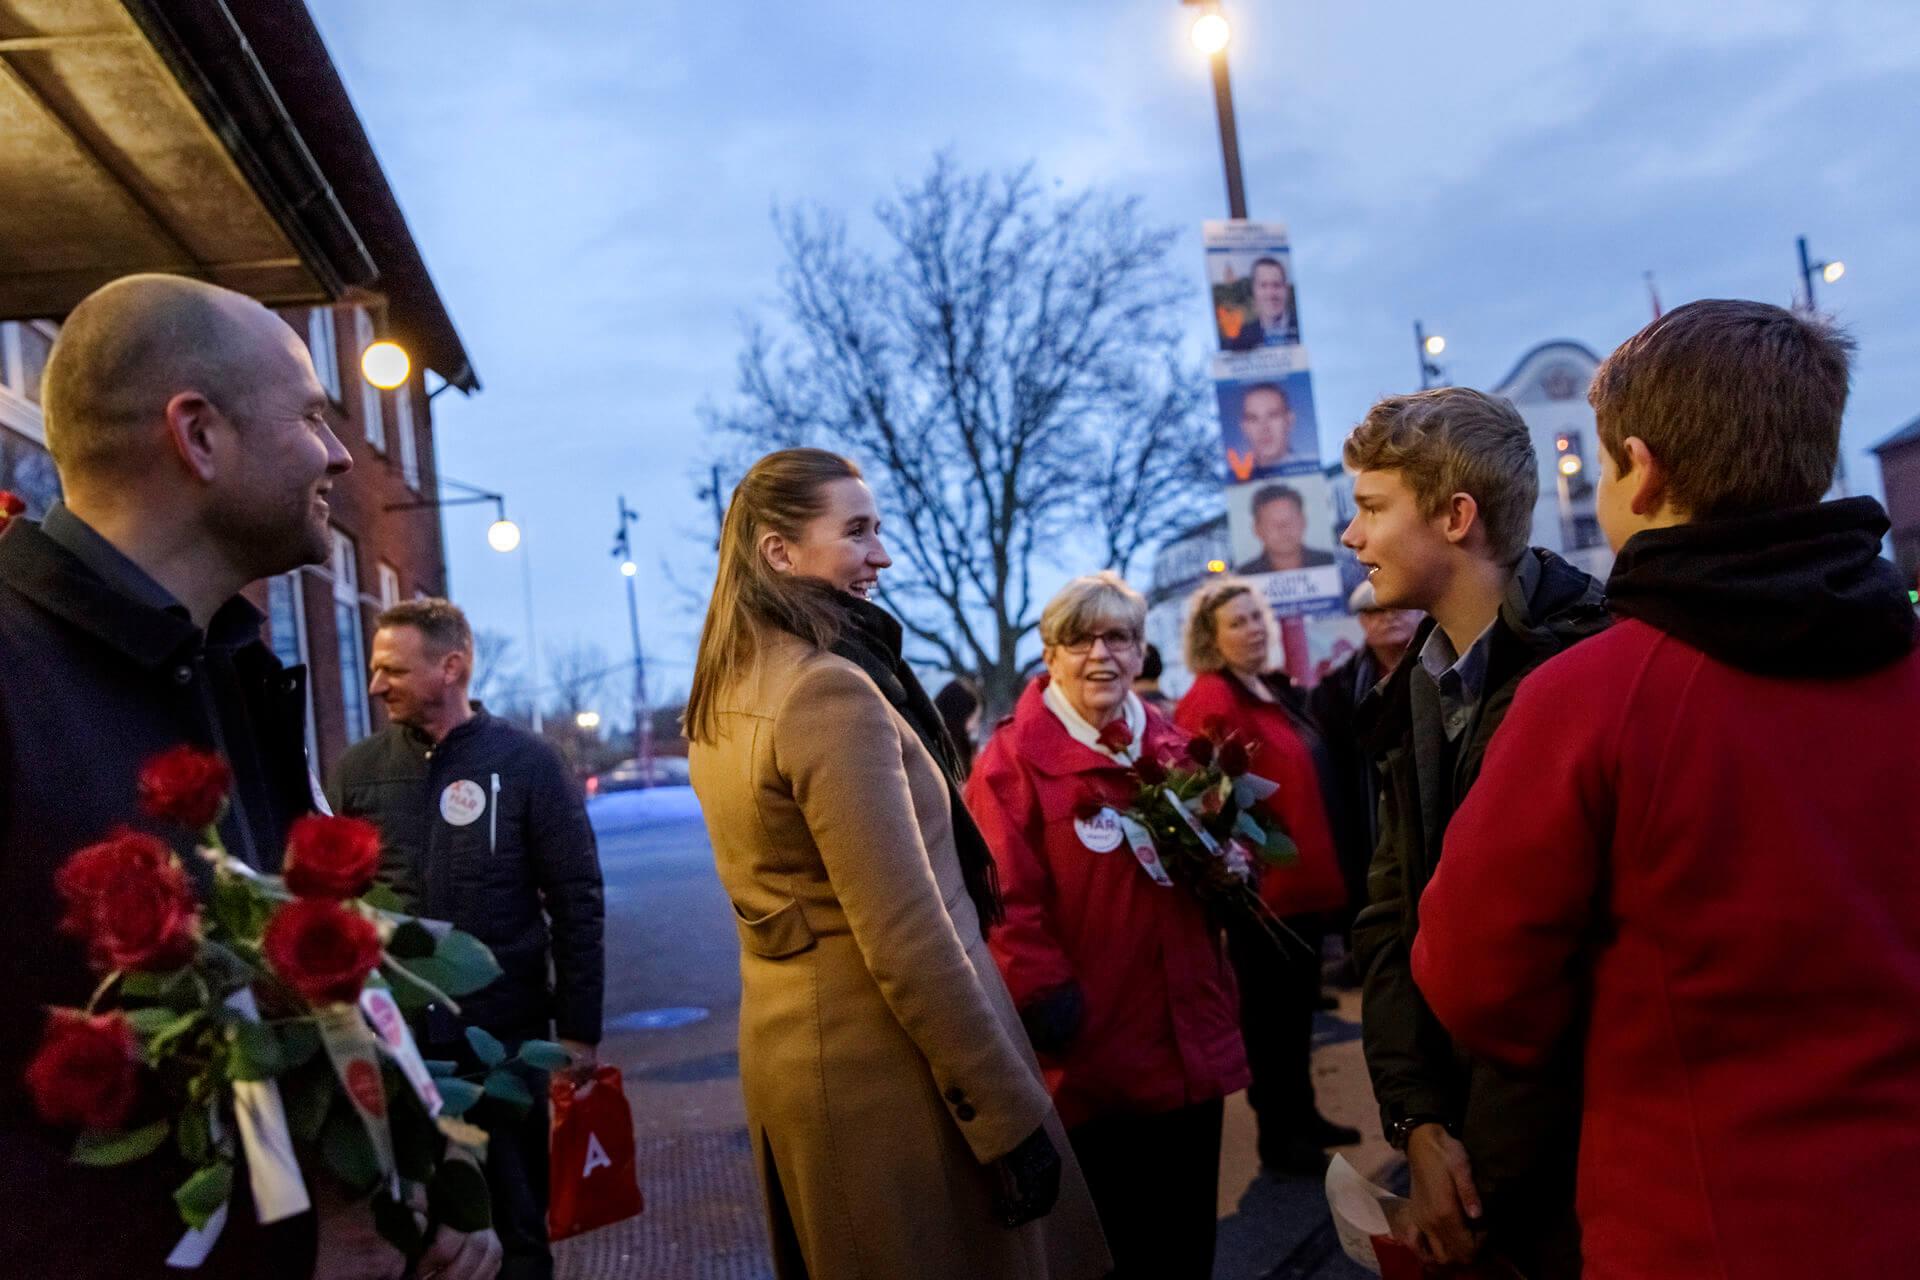 Mette Frederiksen (S) deler røde roser ud i Vordingborg under KV17. Det ser hyggeligt ud, og det er det som regel også. Det gælder for spidskandidater og partiforeningen om at skabe et bredt hold med et tæt samarbejde. Det tager tid, og indsatsen starter, lang tid før det bliver synligt for vælgerne.